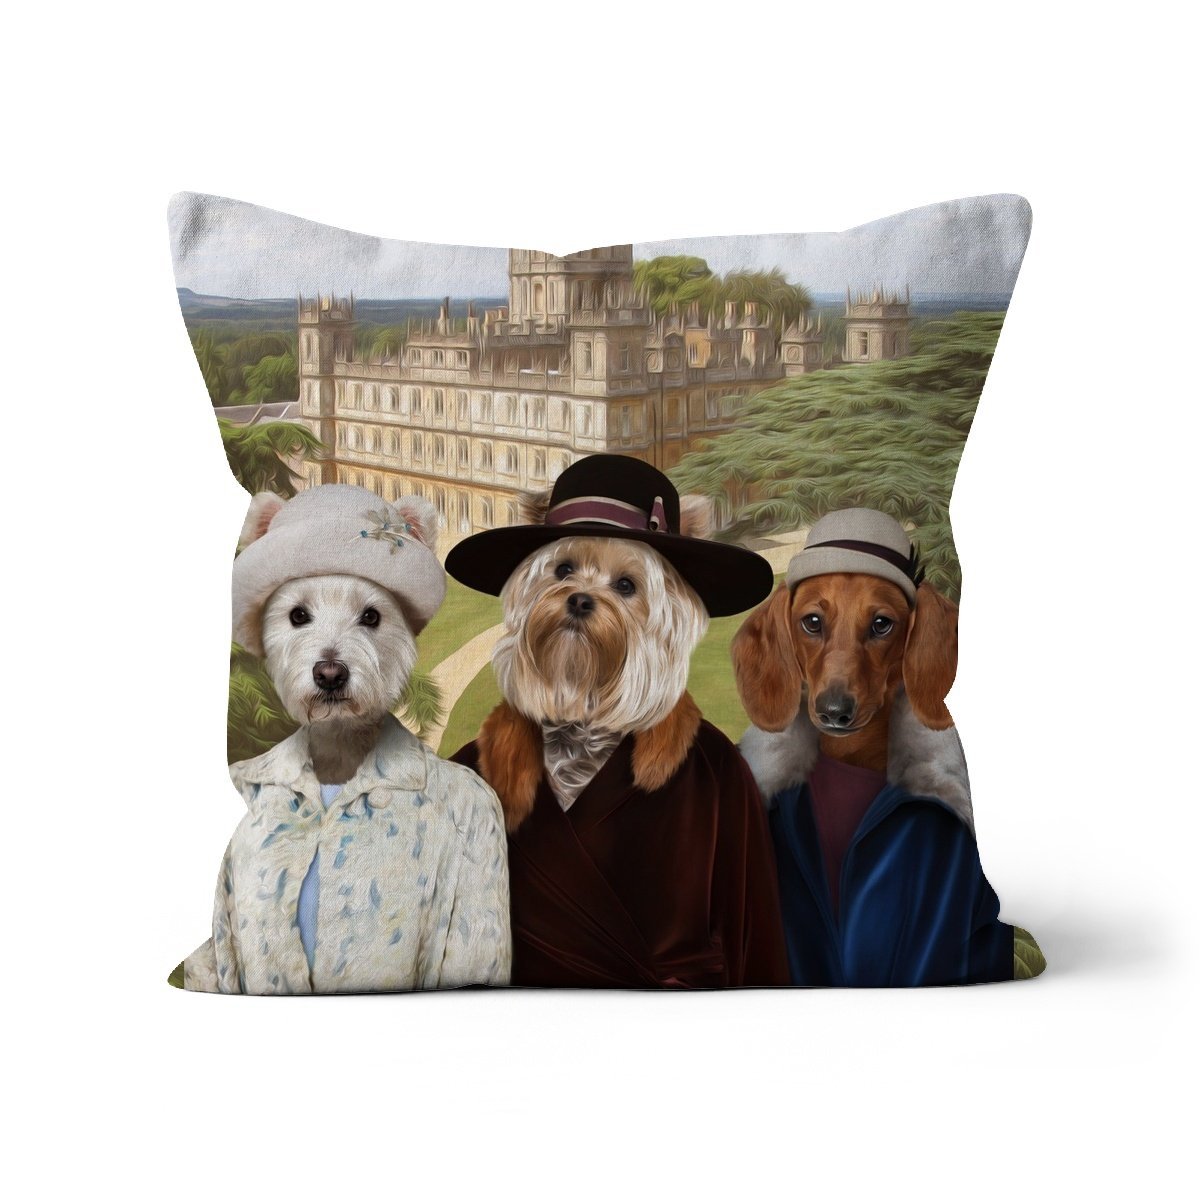 Print Your Digital 3 Pet Portrait On A Cushion - Paw & Glory - #pet portraits# - #dog portraits# - #pet portraits uk#paw and glory, pet portraits cushion,dog pillow custom, dog personalized pillow, custom pillow cover, pet face pillow, my pet pillow